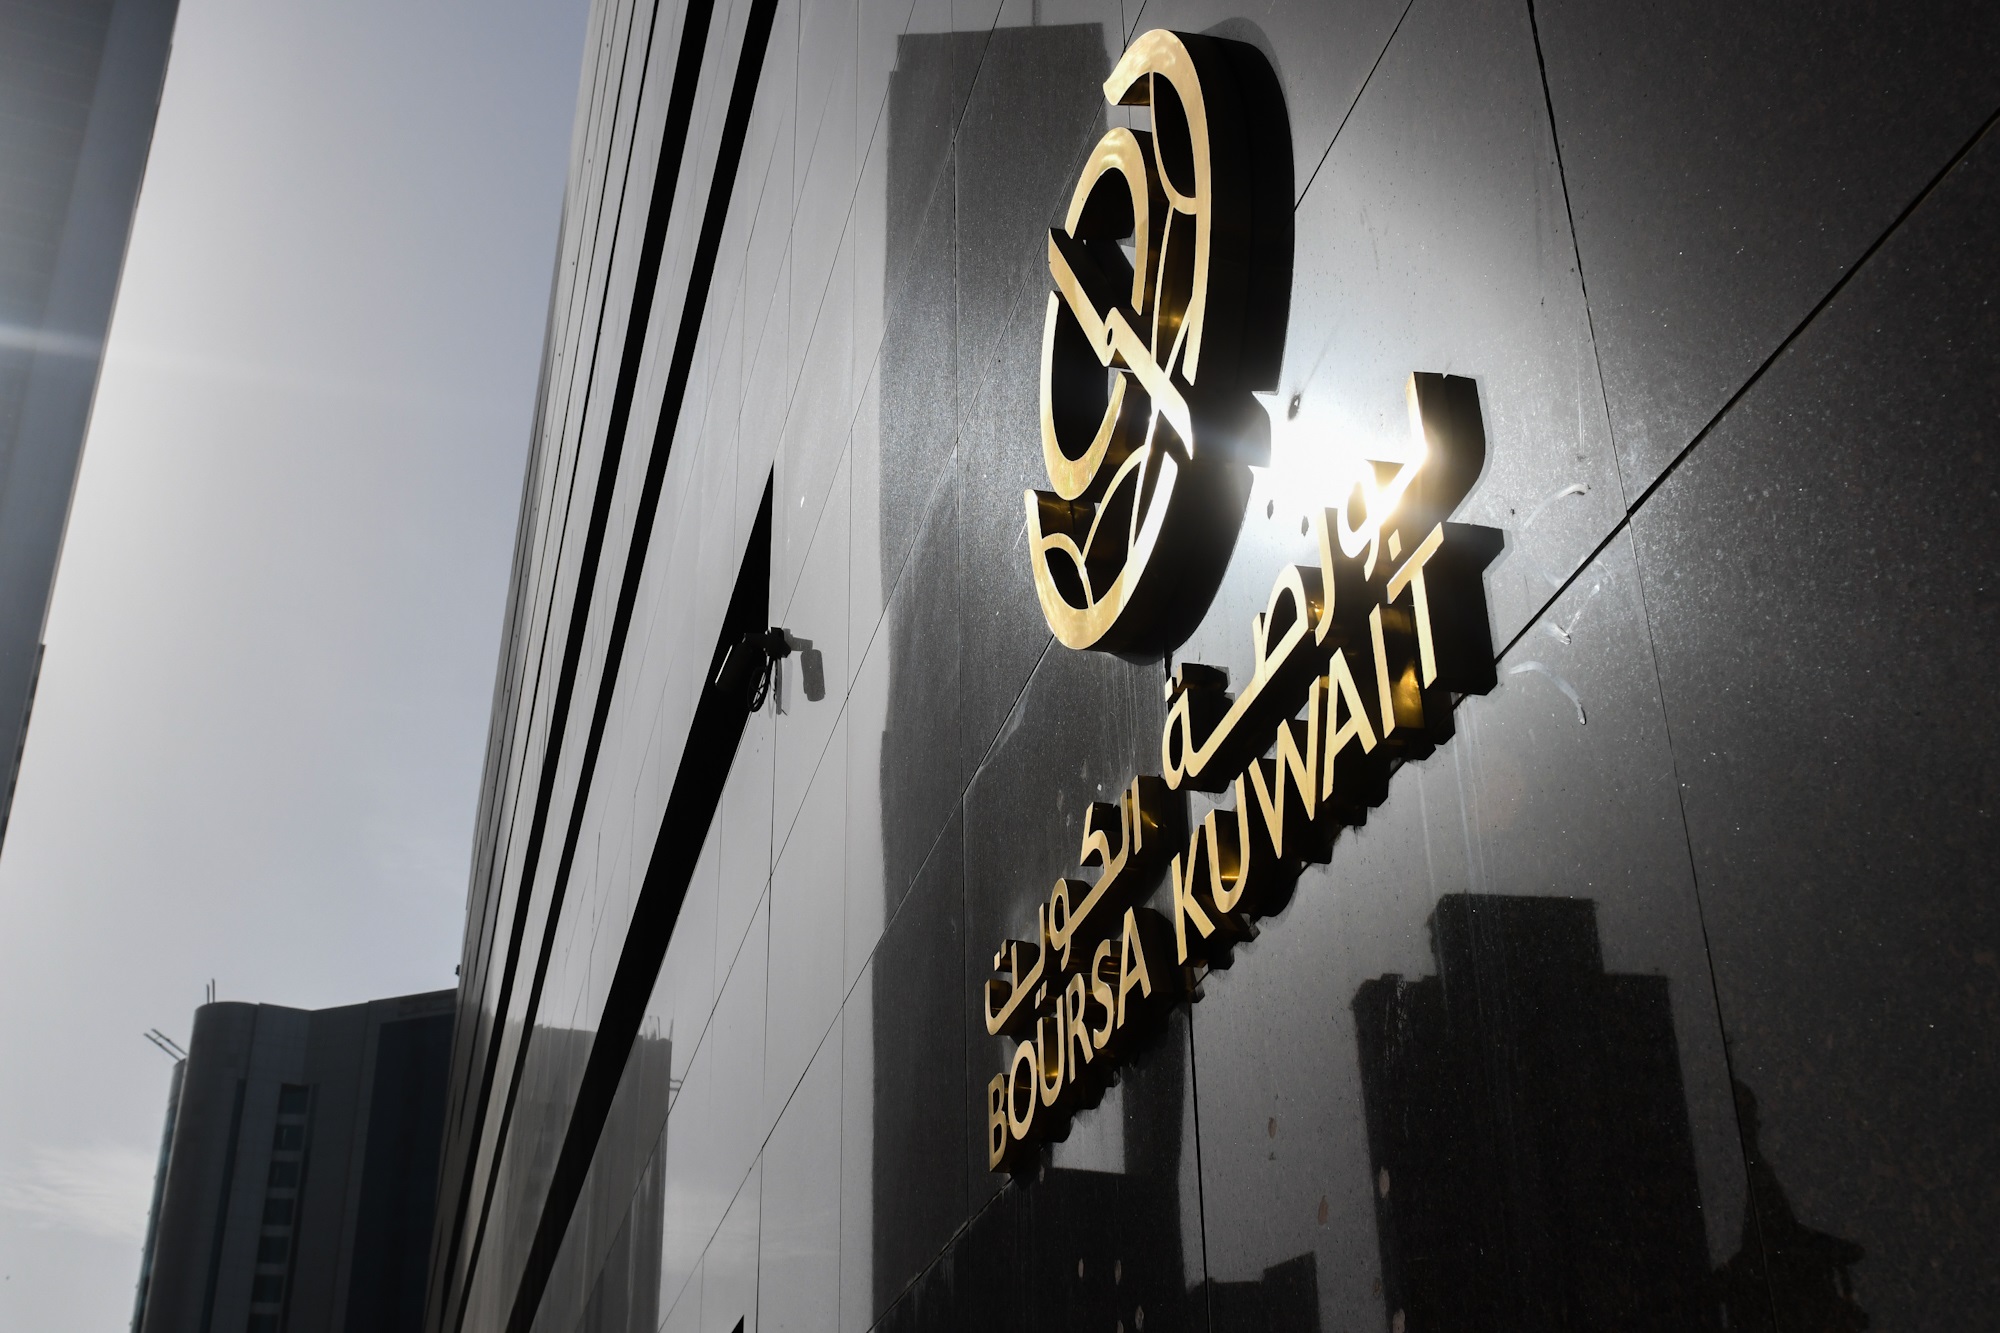 بورصة الكويت تغلق تعاملاتها على ارتفاع مؤشرها العام 9ر48 نقطة ليبلغ 2ر7606 بنسبة 65ر0 في المئة                                                                                                                                                            